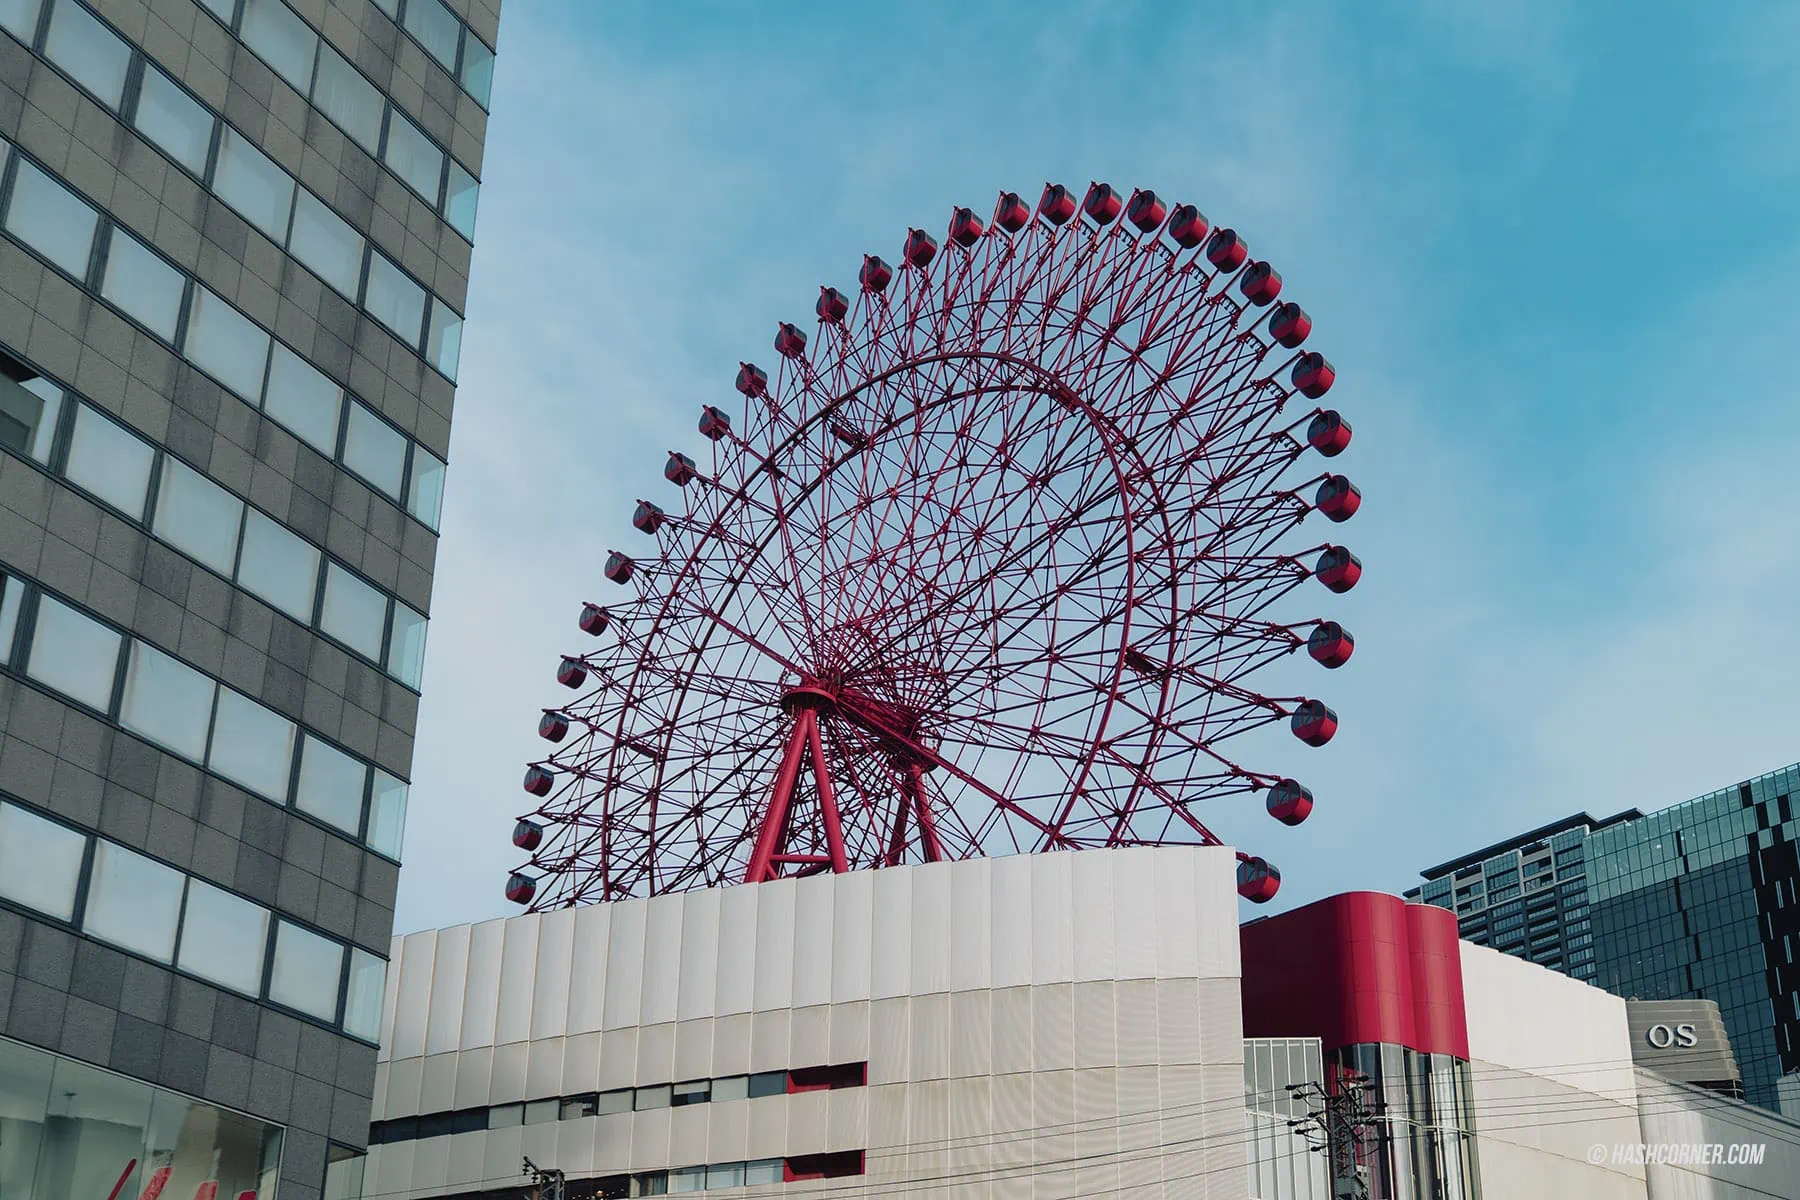 รีวิว HEP FIVE Ferris Wheel x โอซาก้า ขึ้นชิงช้าสวรรค์ชมวิวเมือง